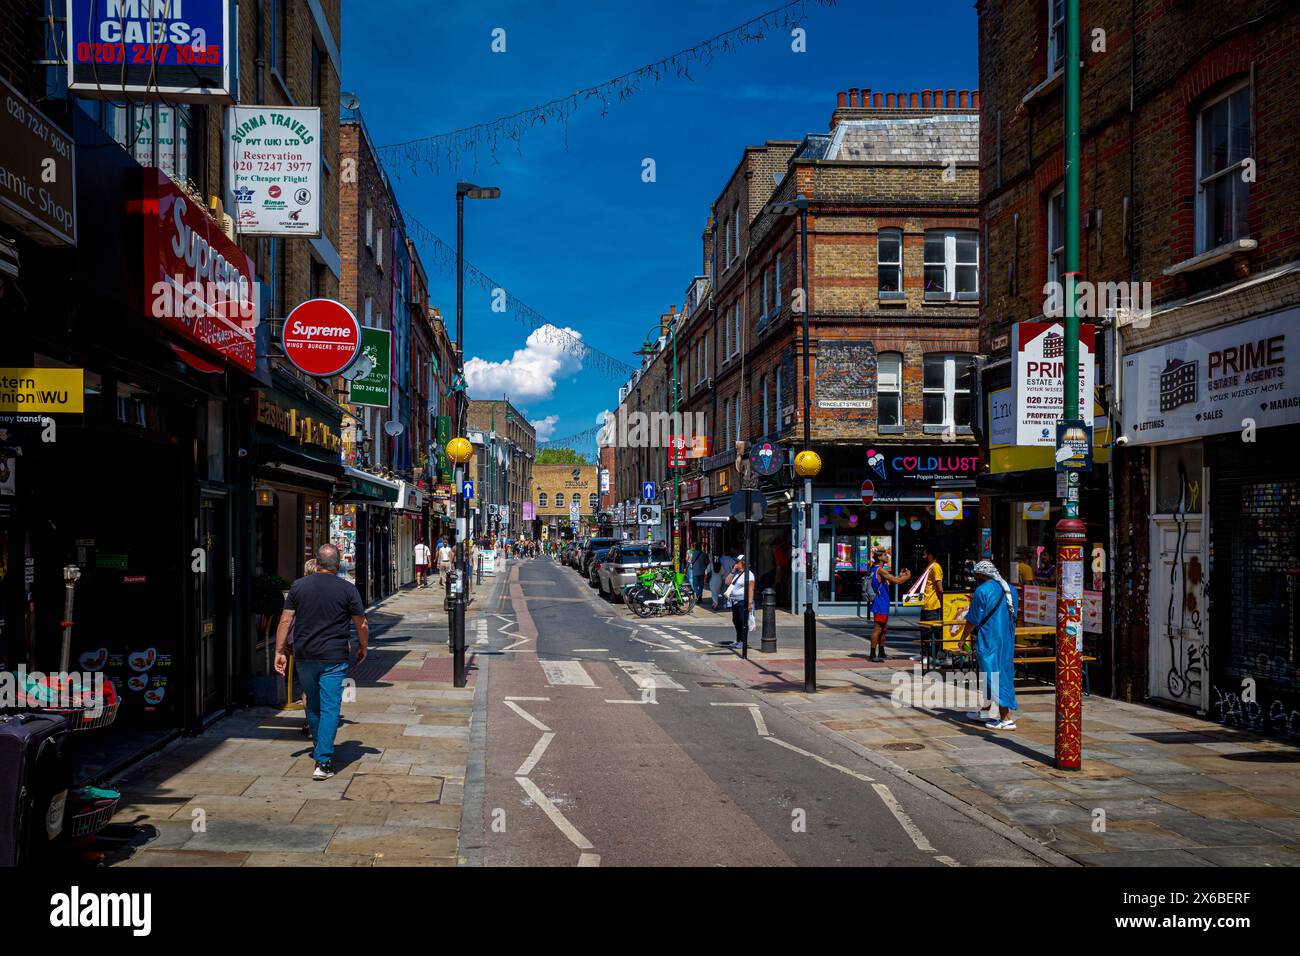 Brick Lane London - Brick Lane est une rue bien connue dans l'est de Londres, célèbre pour ses restaurants de curry, ses divertissements et son marché très populaire le dimanche. Banque D'Images